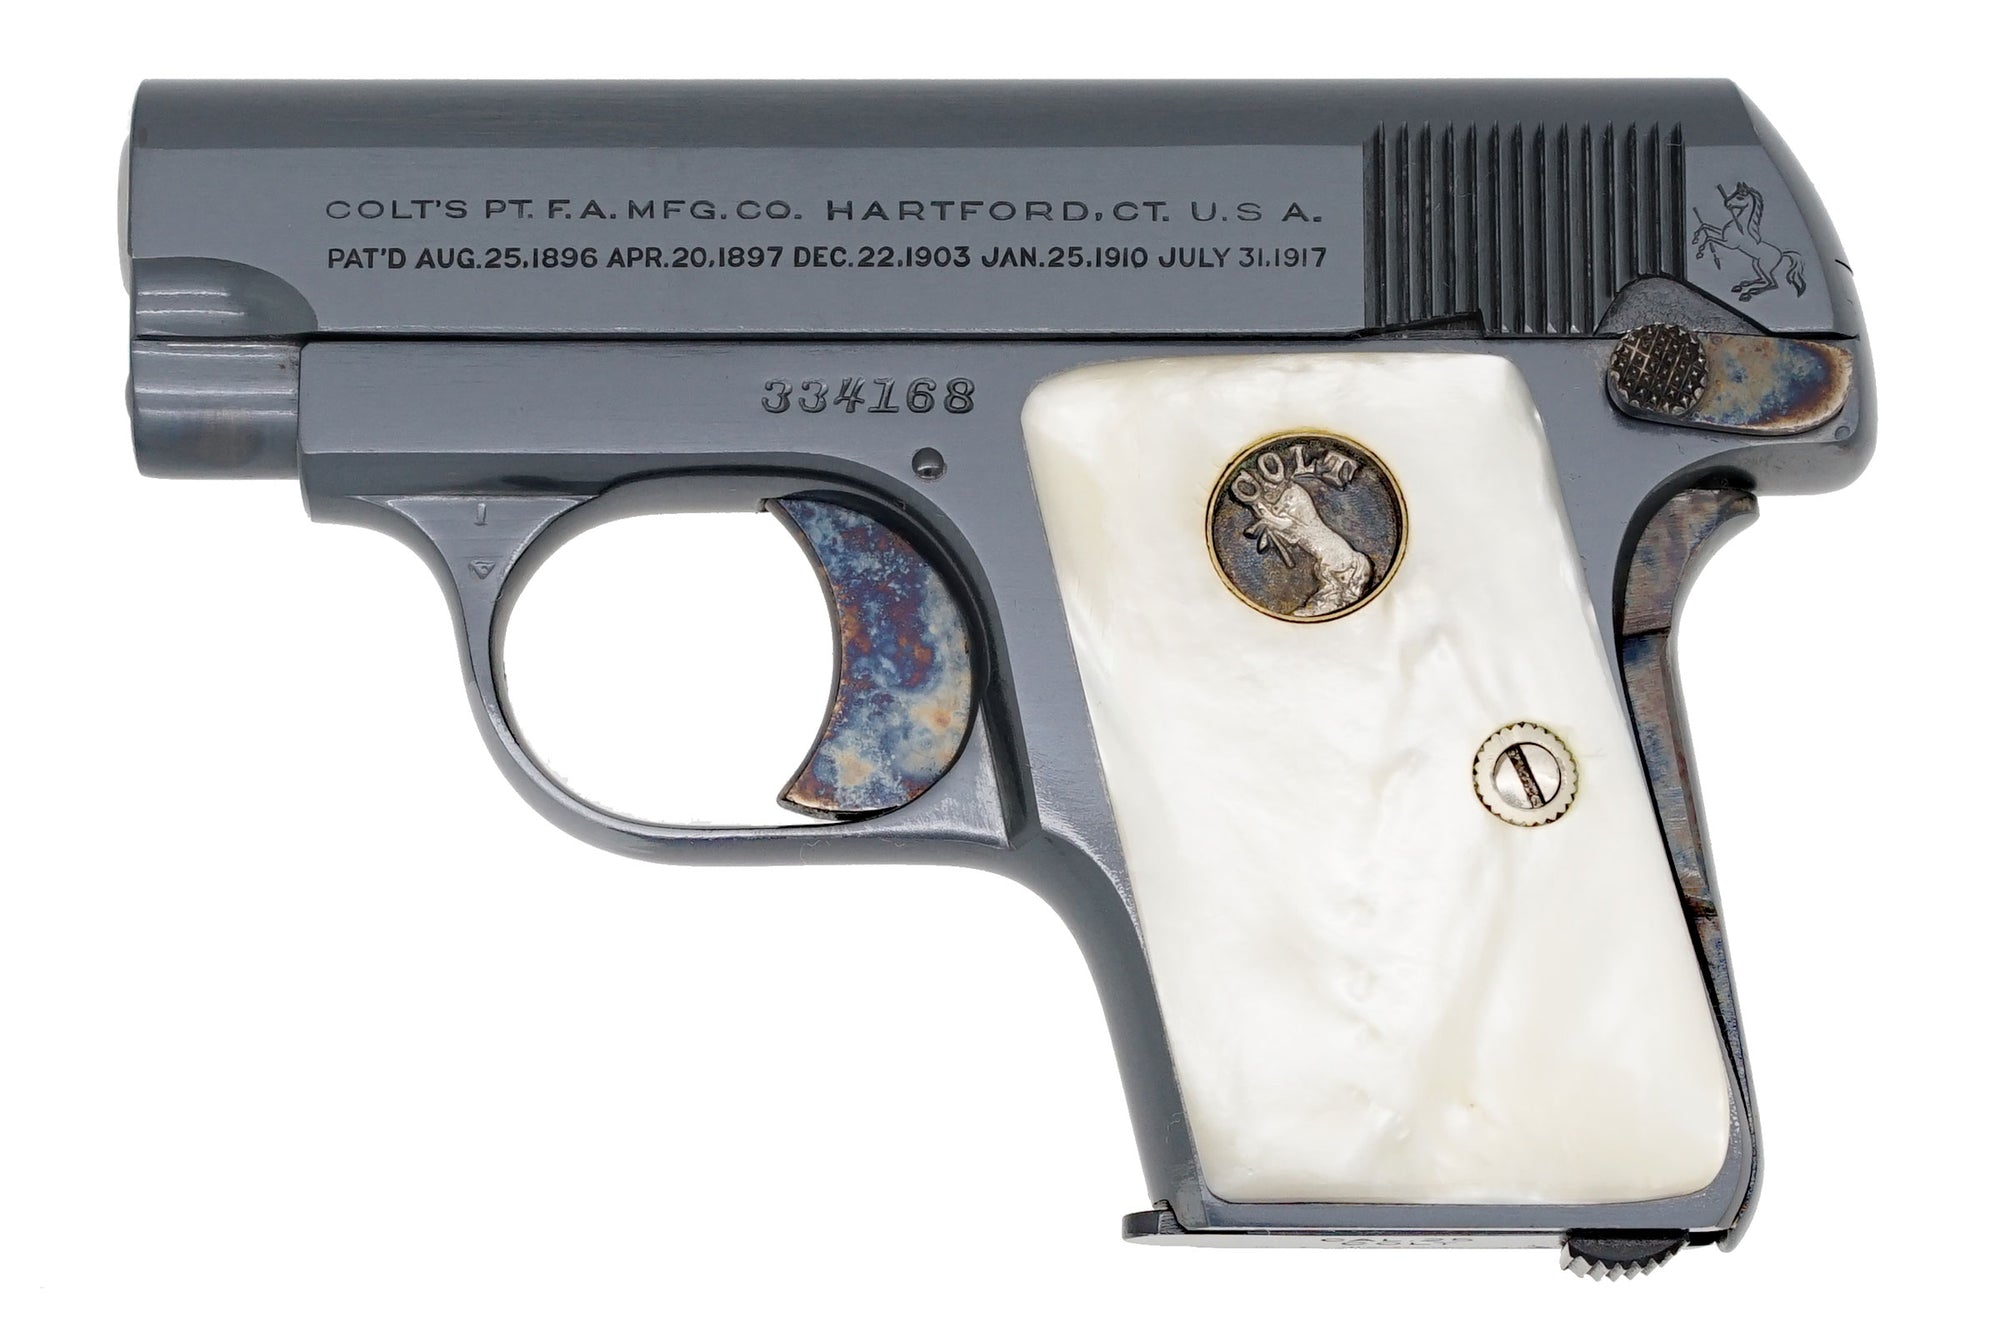 Colt 1908 Vest Pocket 25ACP SN:334168 MFG:1923